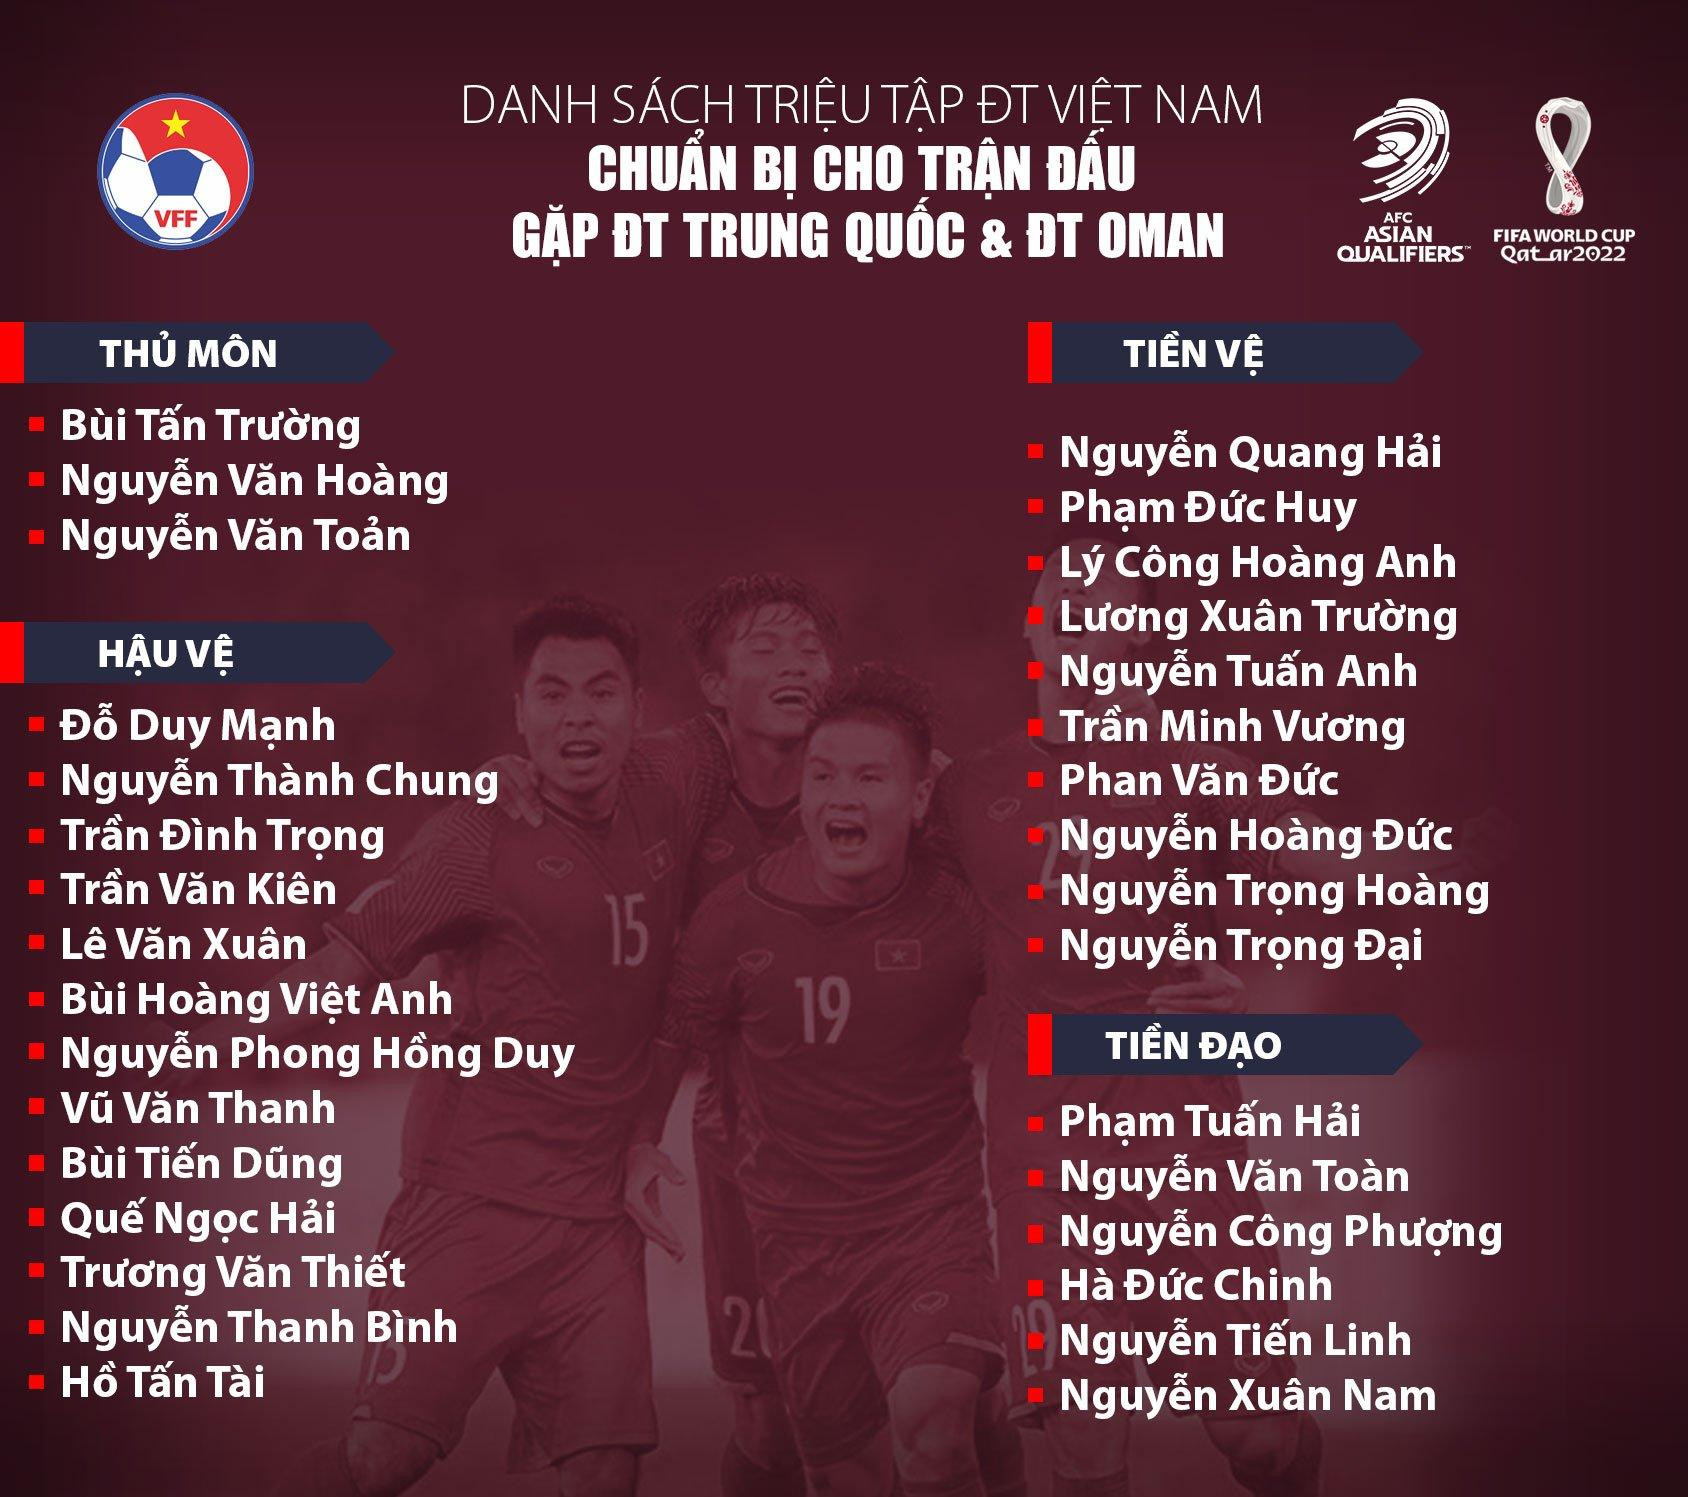 Thầy Park gọi 32 cầu thủ cho trận đấu Trung Quốc và Oman ảnh 2